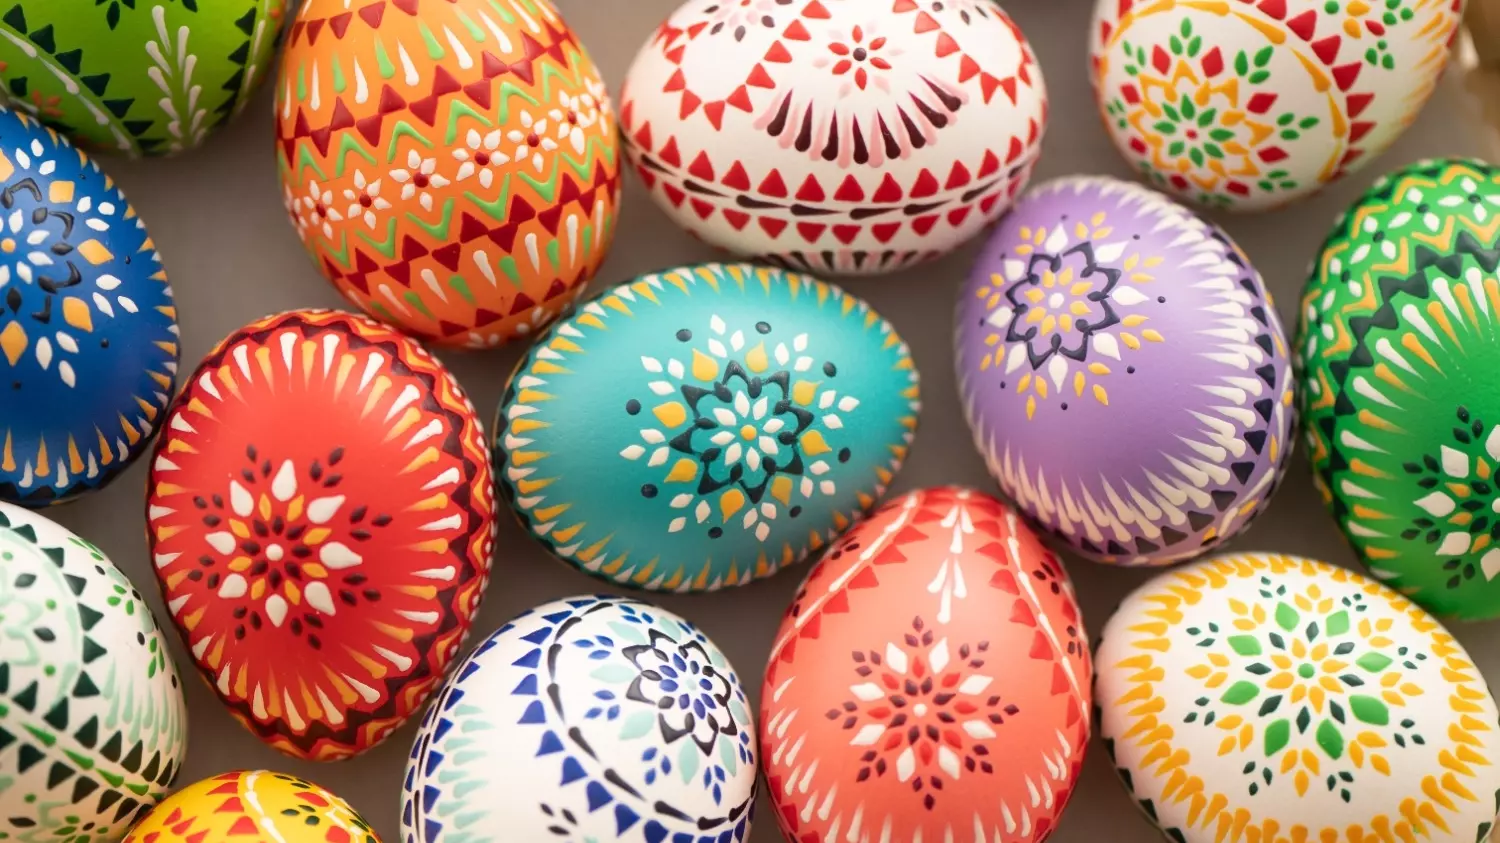 Яйца на Пасху красят, потому что, согласно преданию, Мария Магдалина когда-то подарила первое пасхальное яйцо императору Тиберию. Она принесла его в дар, чтобы сообщить о воскрешении Христа